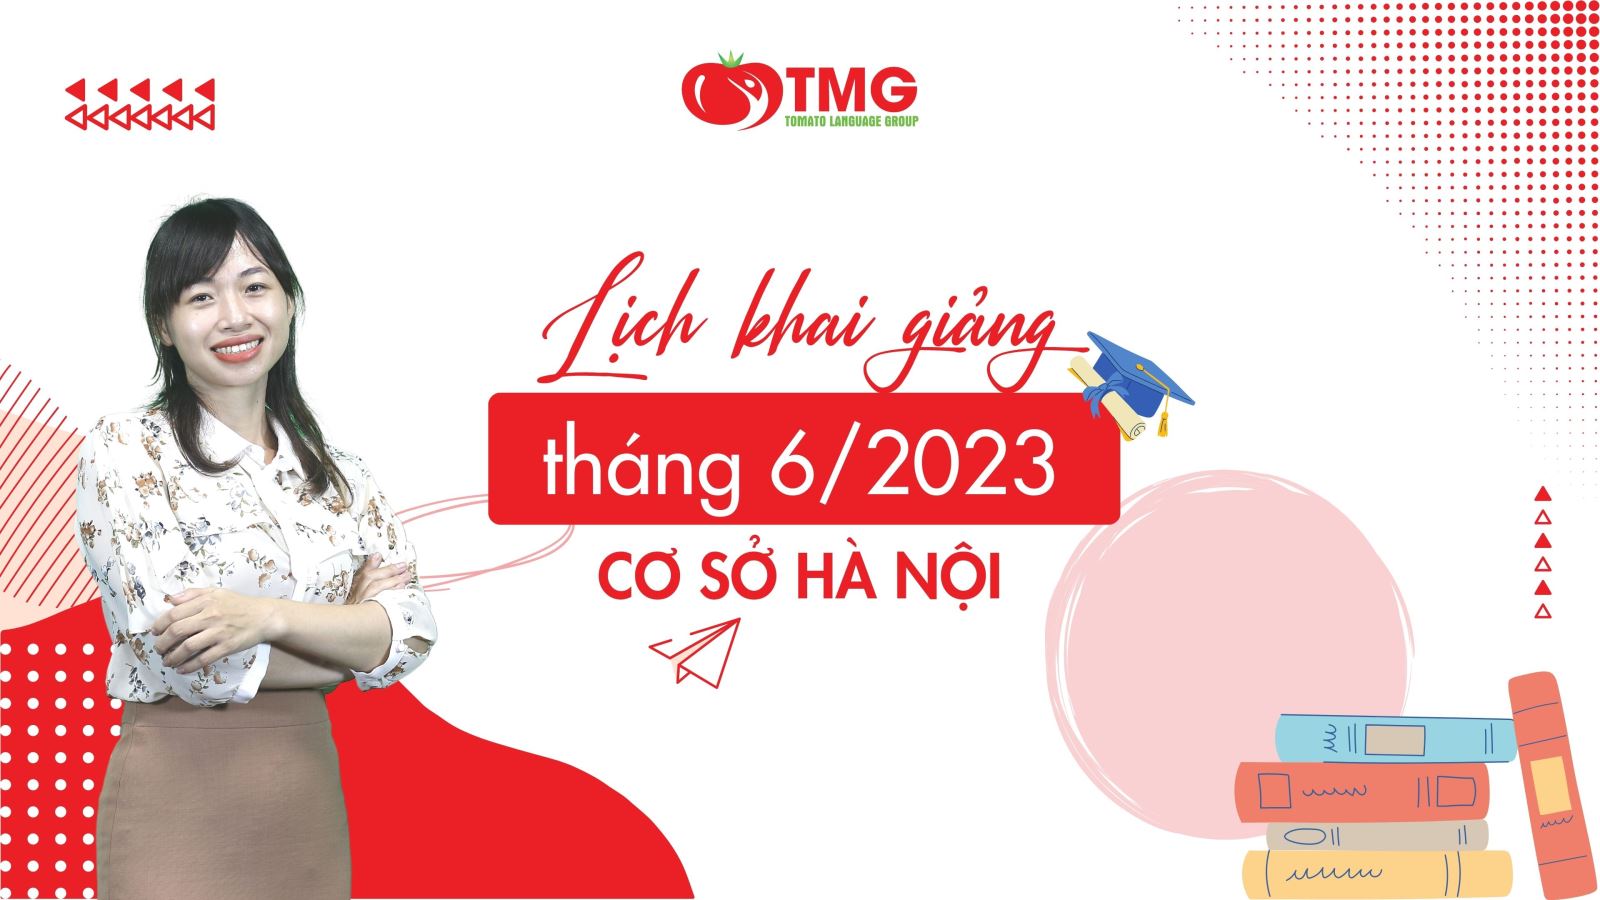 Lịch khai giảng tháng 6/2023 Trung tâm ngoại ngữ Tomato cơ sở Hà Nội 